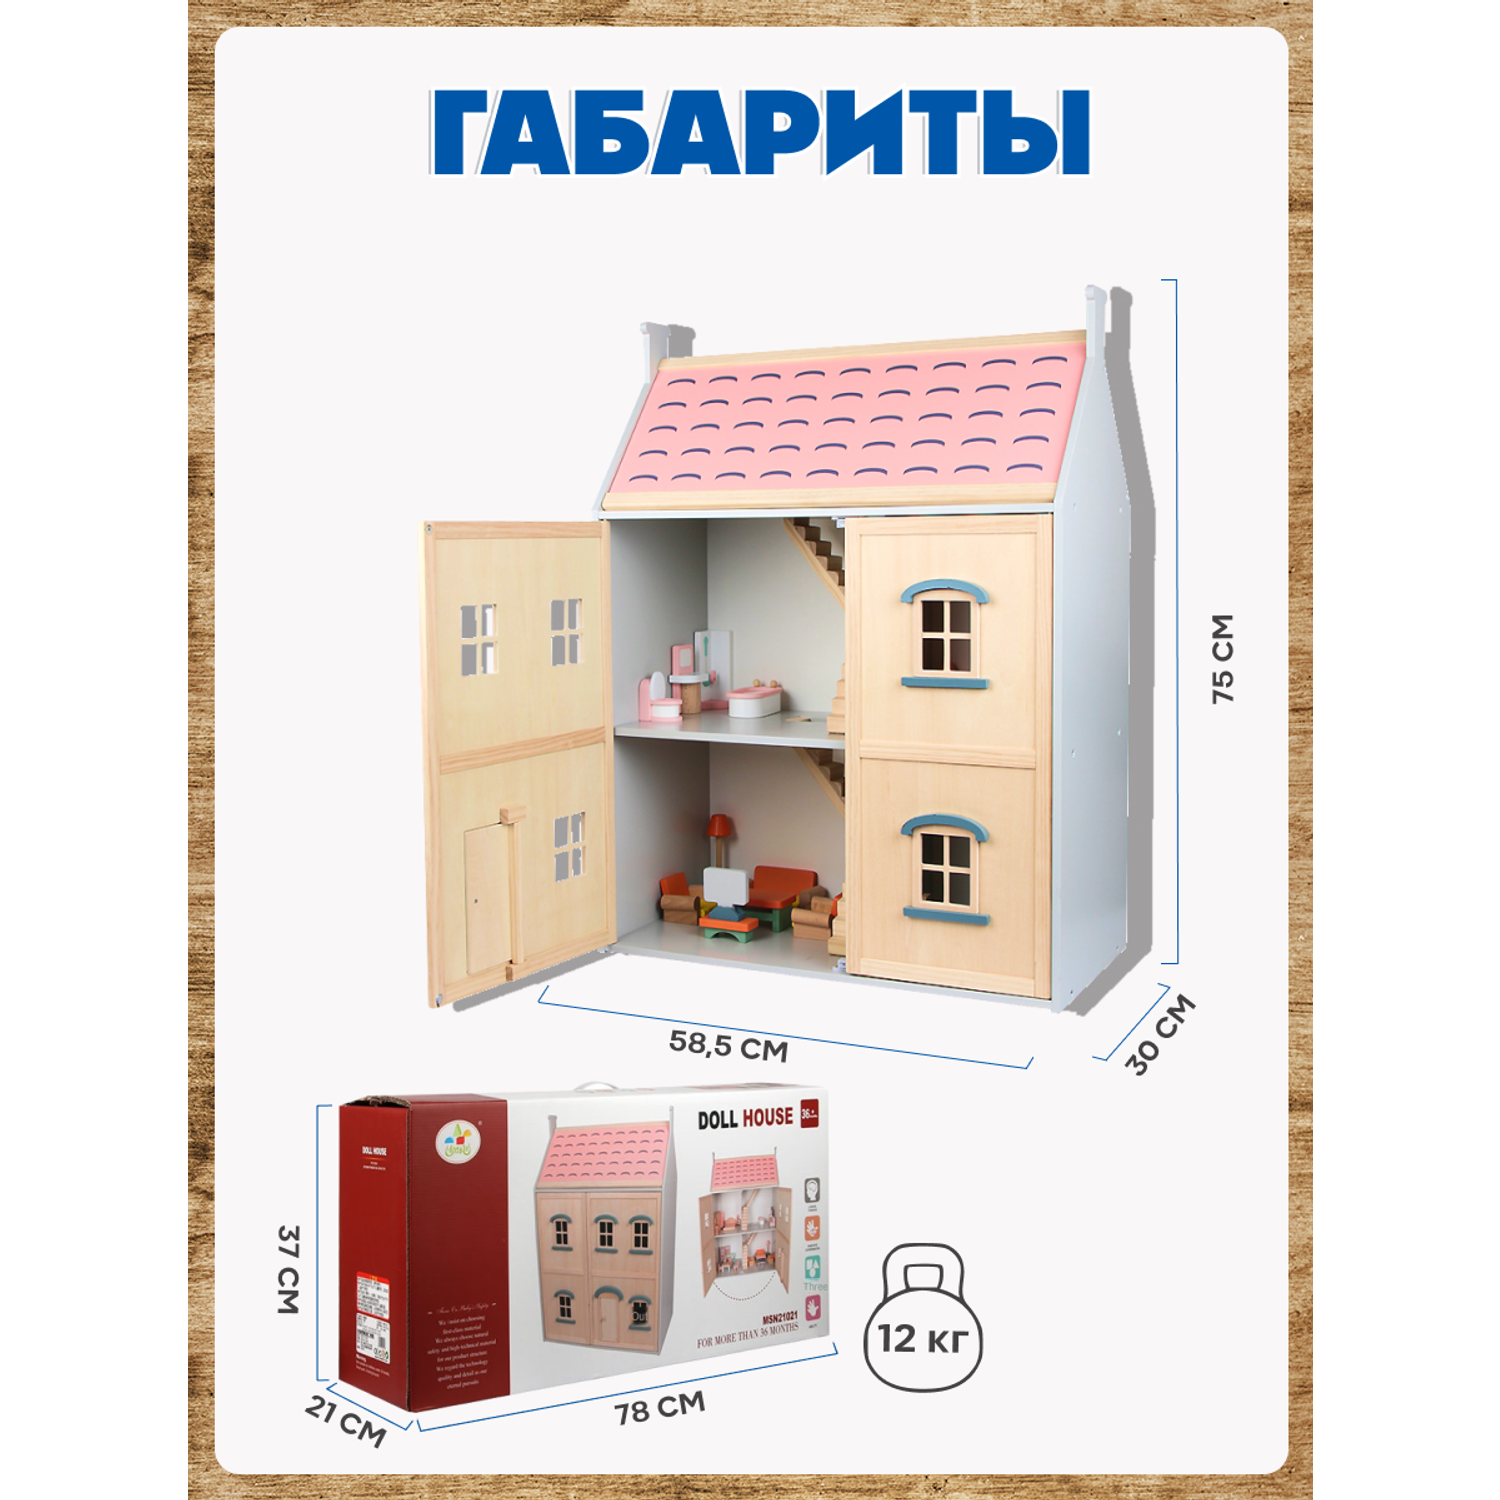 Кукольный домик Зайка любит Большой кукольный домик с мебелью из натурального дерева для кукол 2 этажа MSN21021 - фото 14